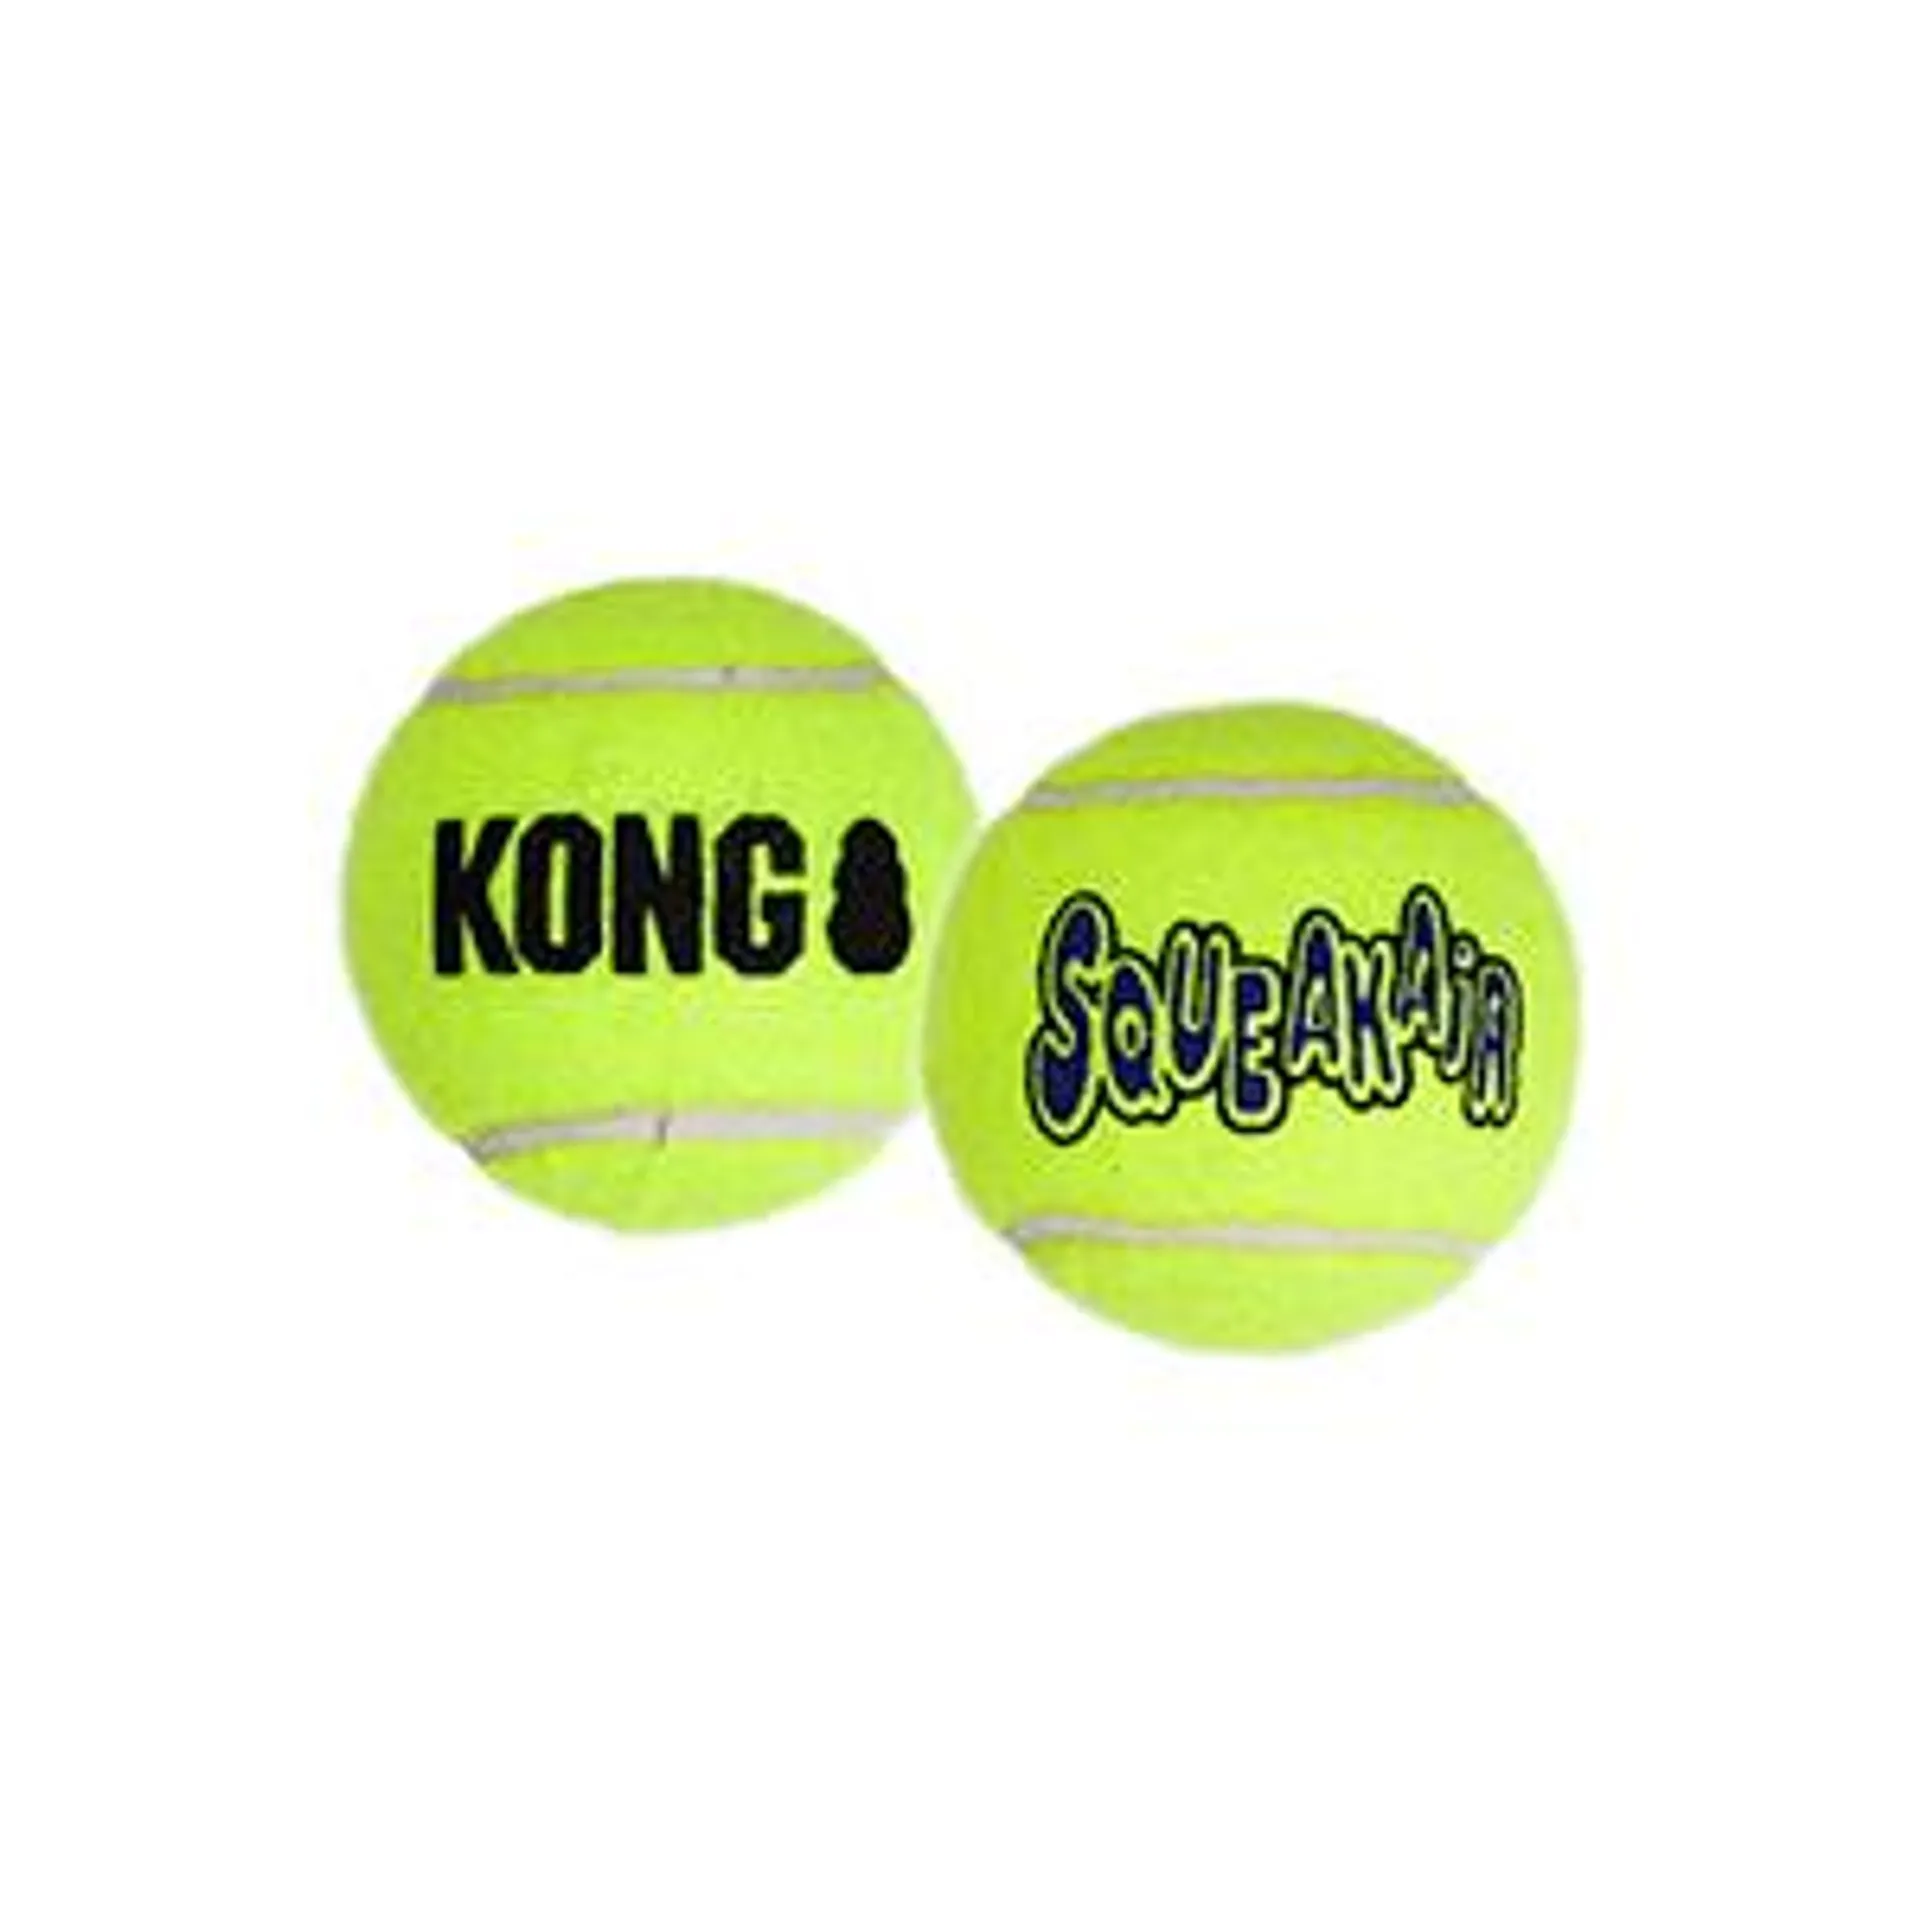 Kong Squeakair Balls Dog Toys X Small 3 Pack